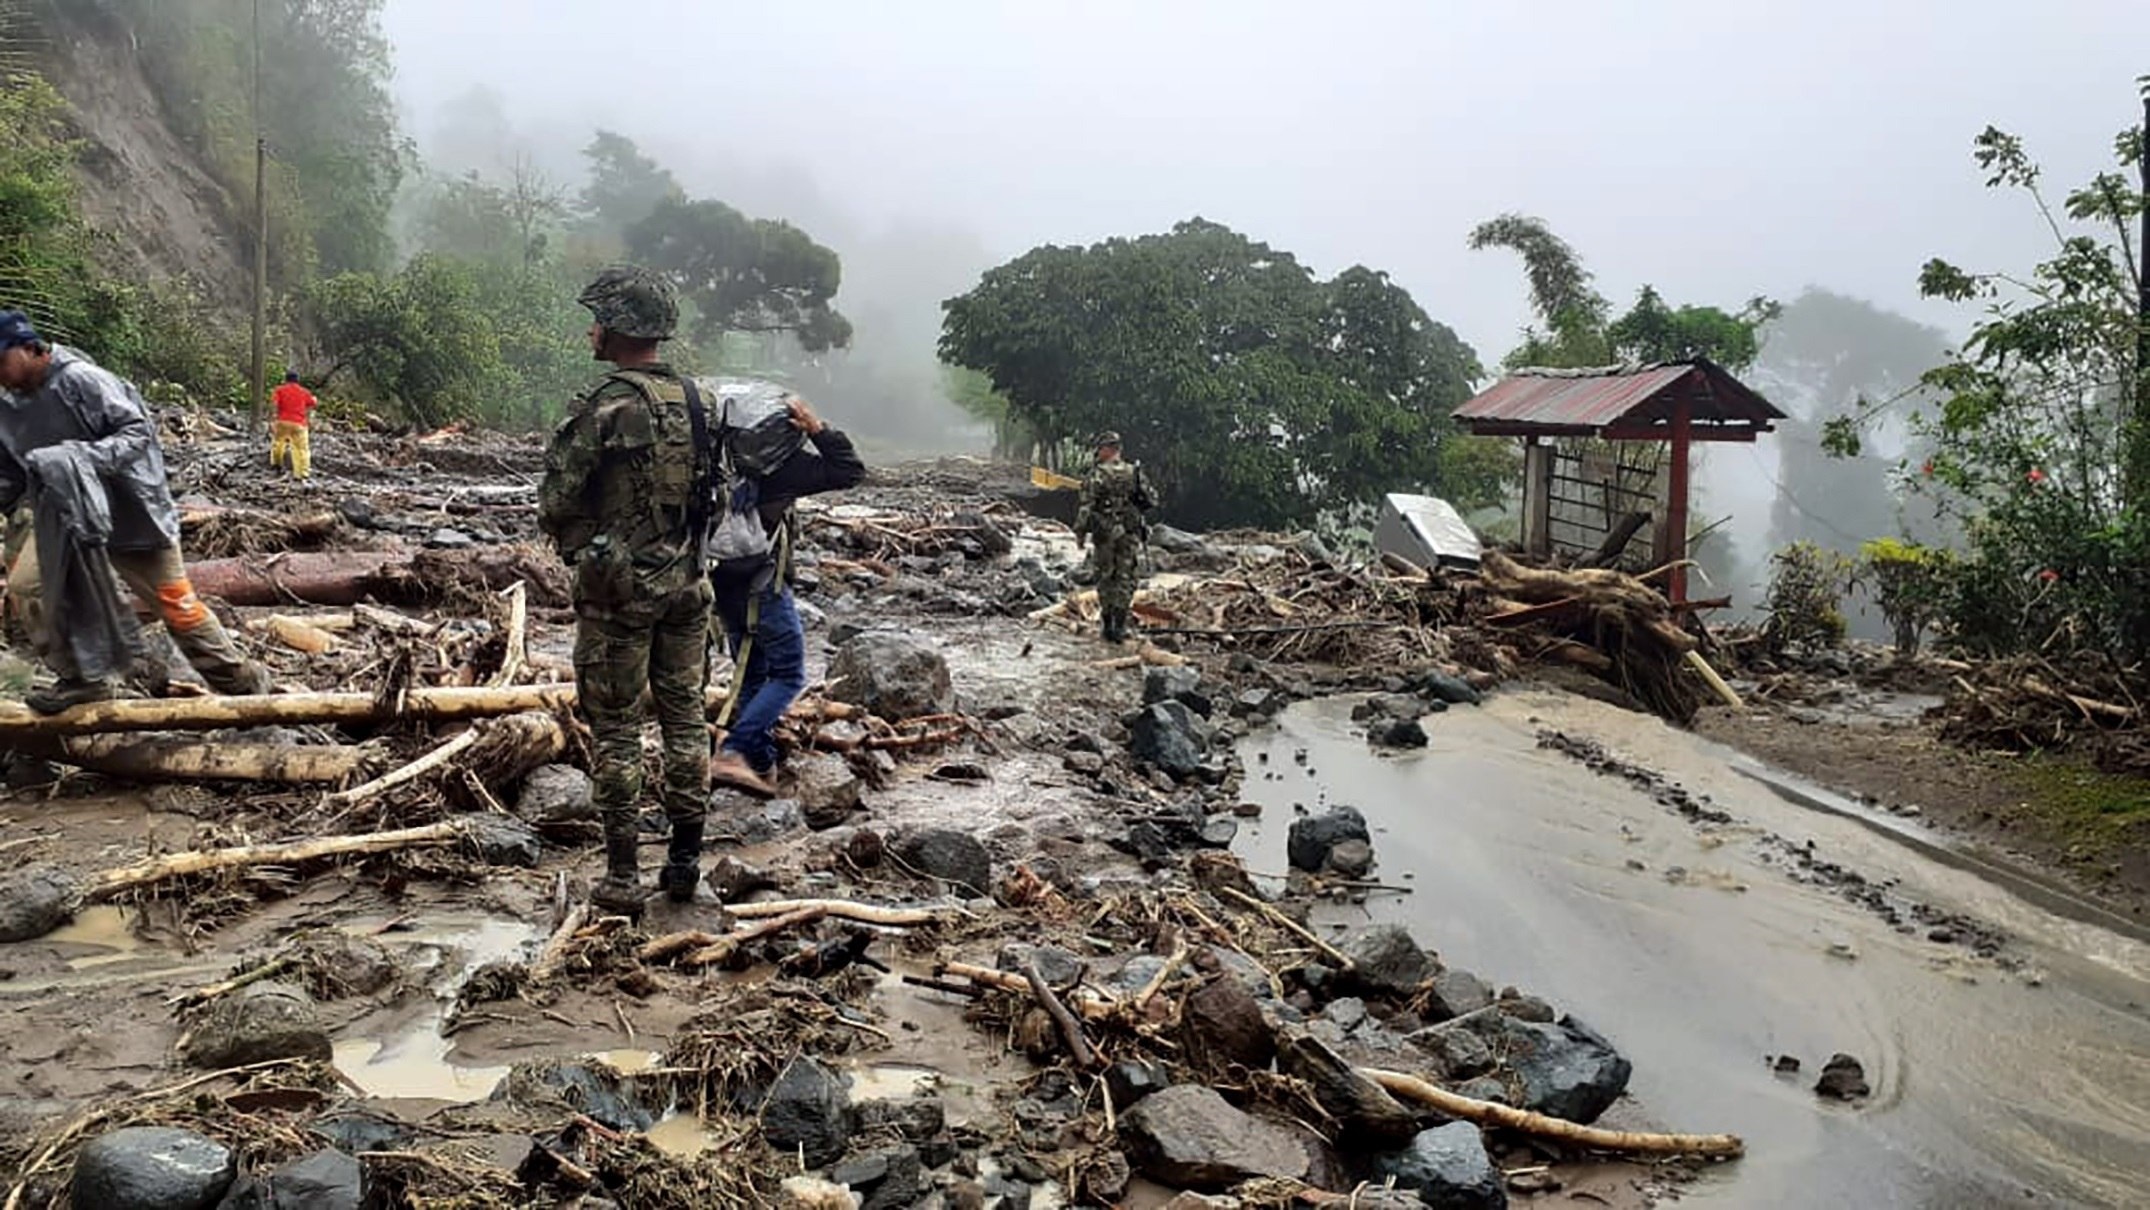 Imagen de referencia. Deslizamiento de tierra por las fuertes lluvias en la vía Uramita-Dabeiba, en Antioquia, en noviembre de 2020. (Colombia). Foto: EFE/ Ejército Nacional de Colombia

